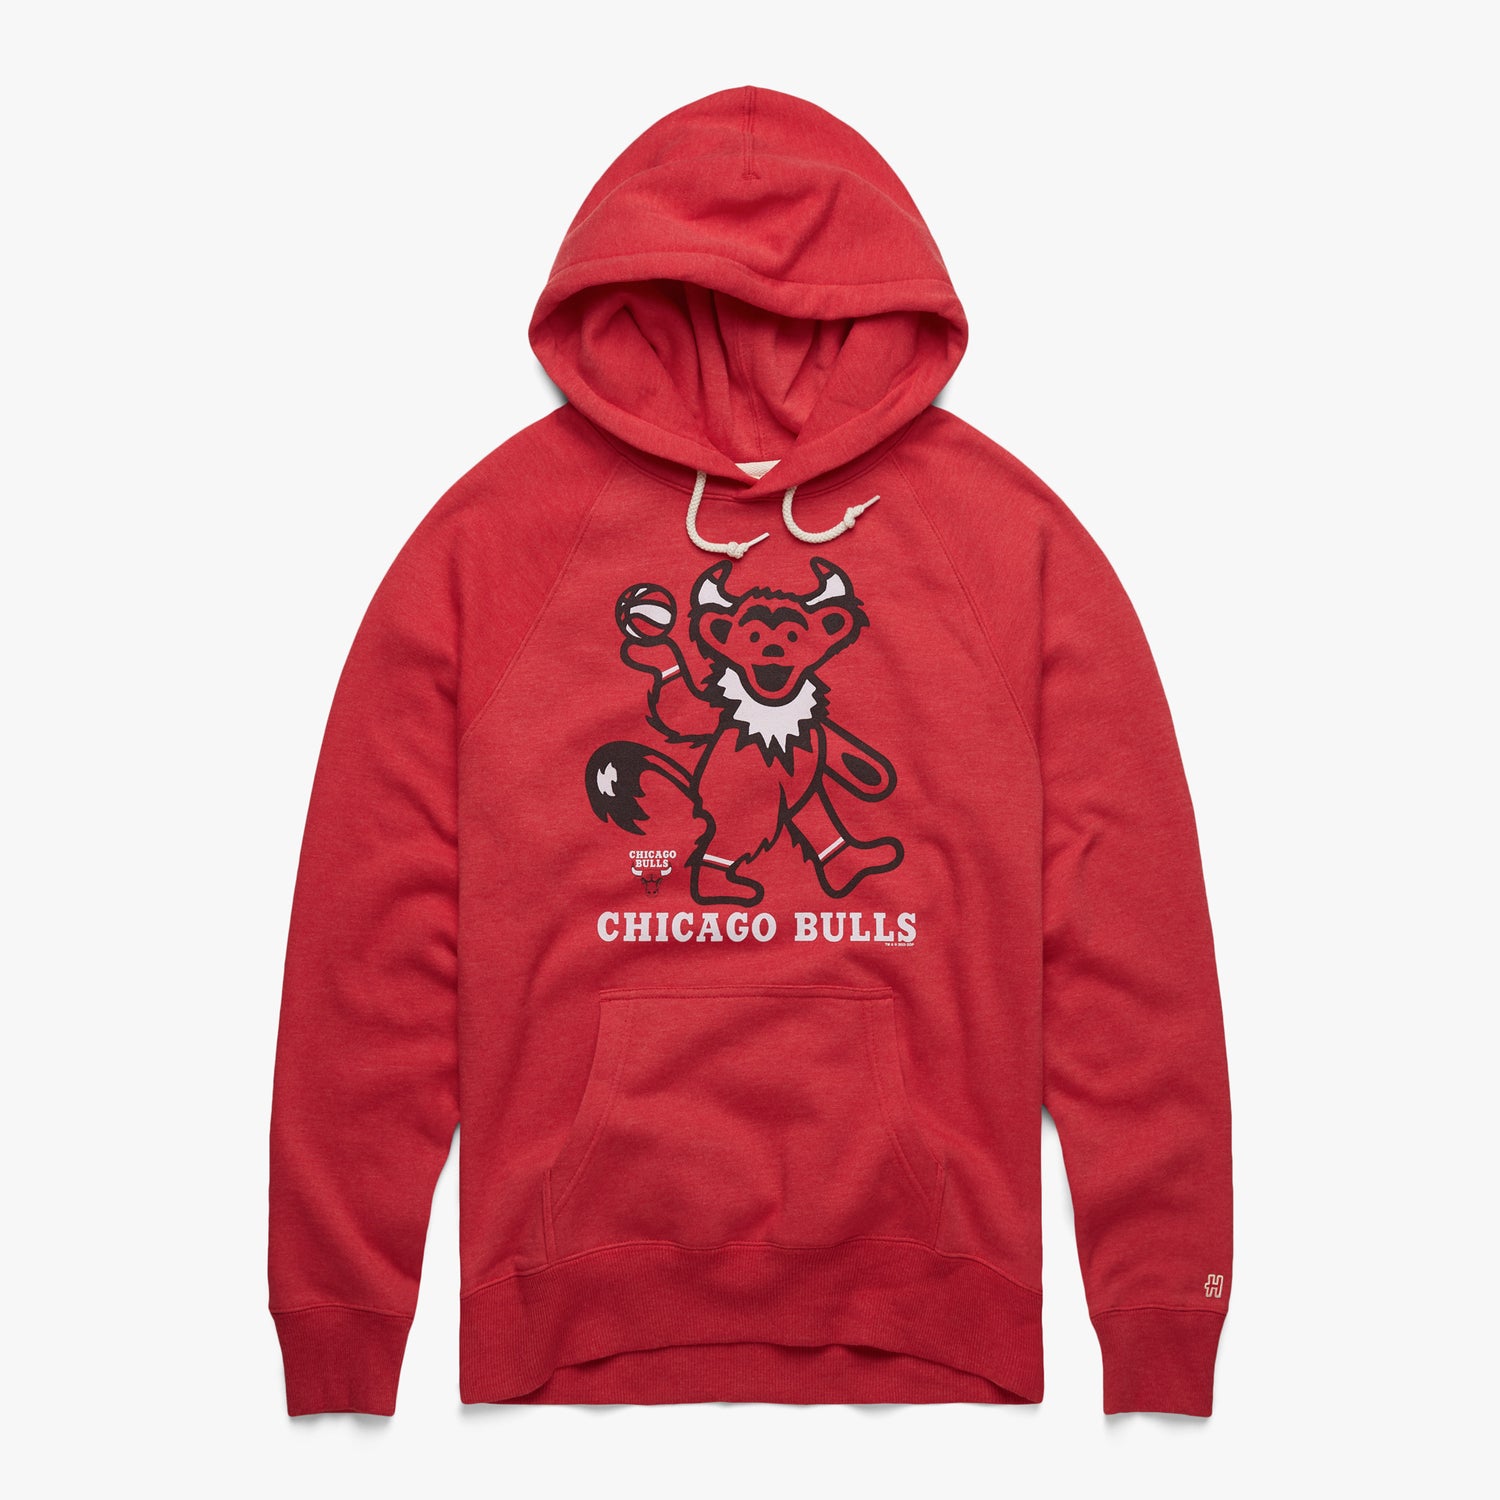 NBA Grateful Dead Chicago Bulls shirt, hoodie, sweater, long